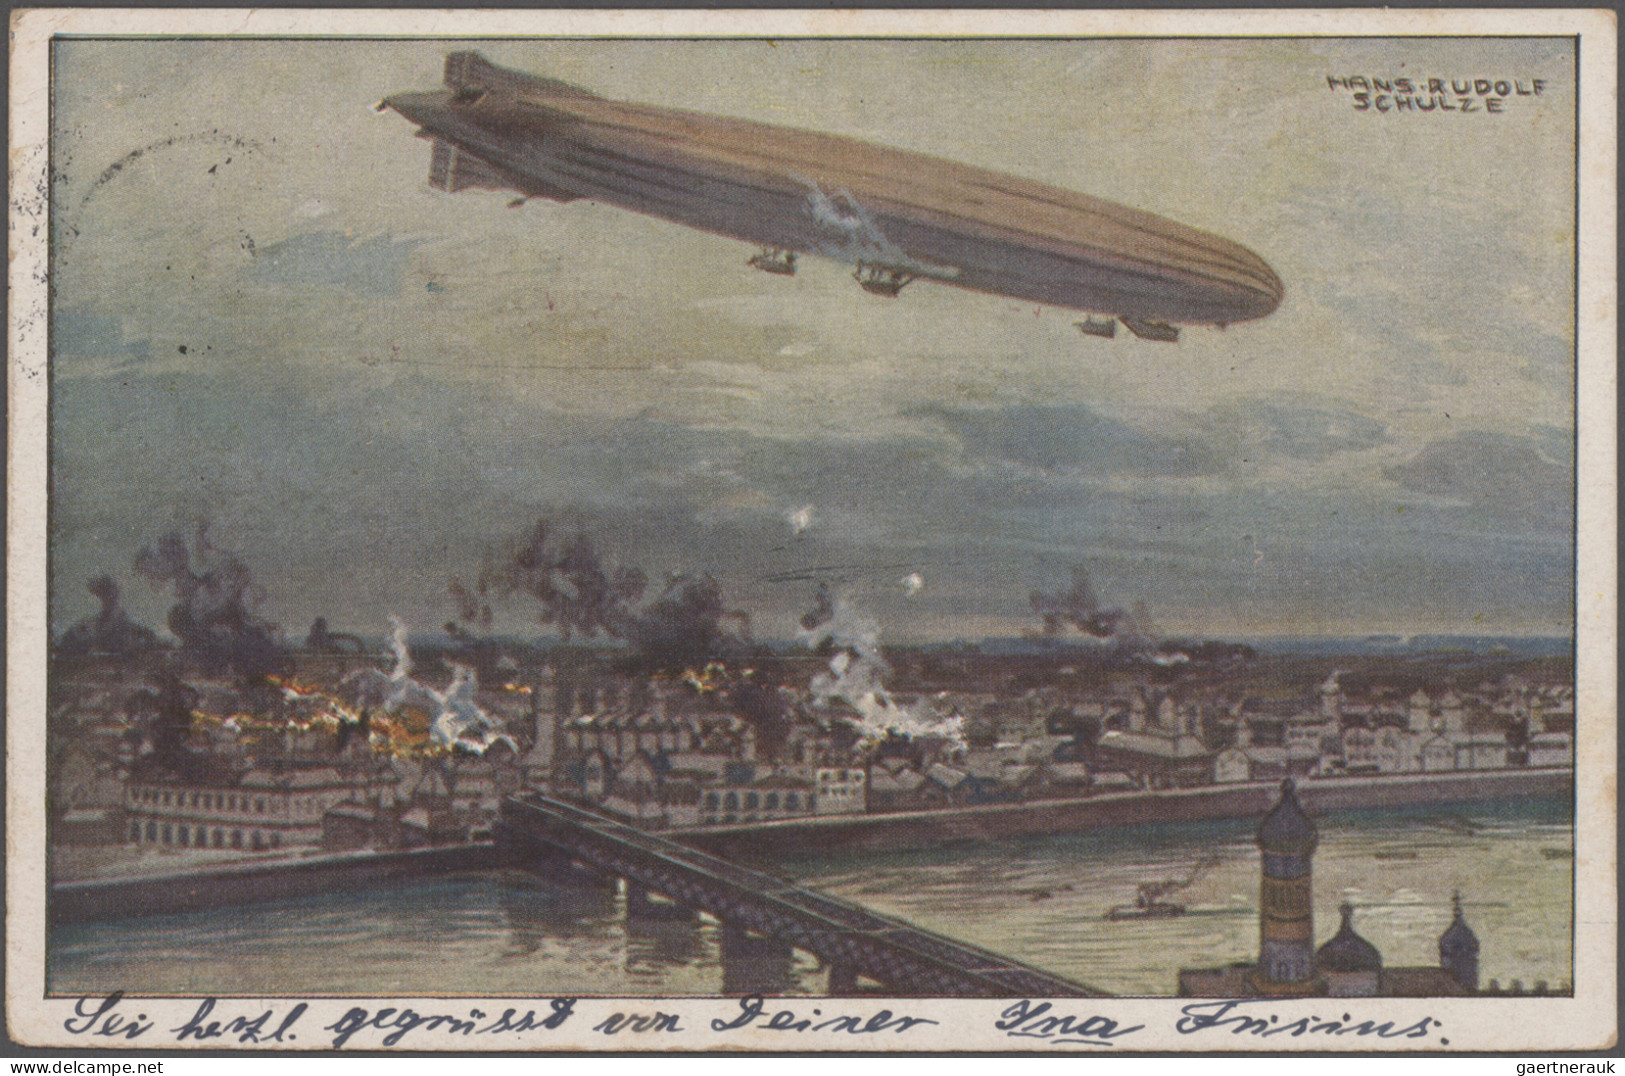 Zeppelin Mail - Germany: 1909/1975 (ca.), schöne Partie von über 110 Zeppelin- u